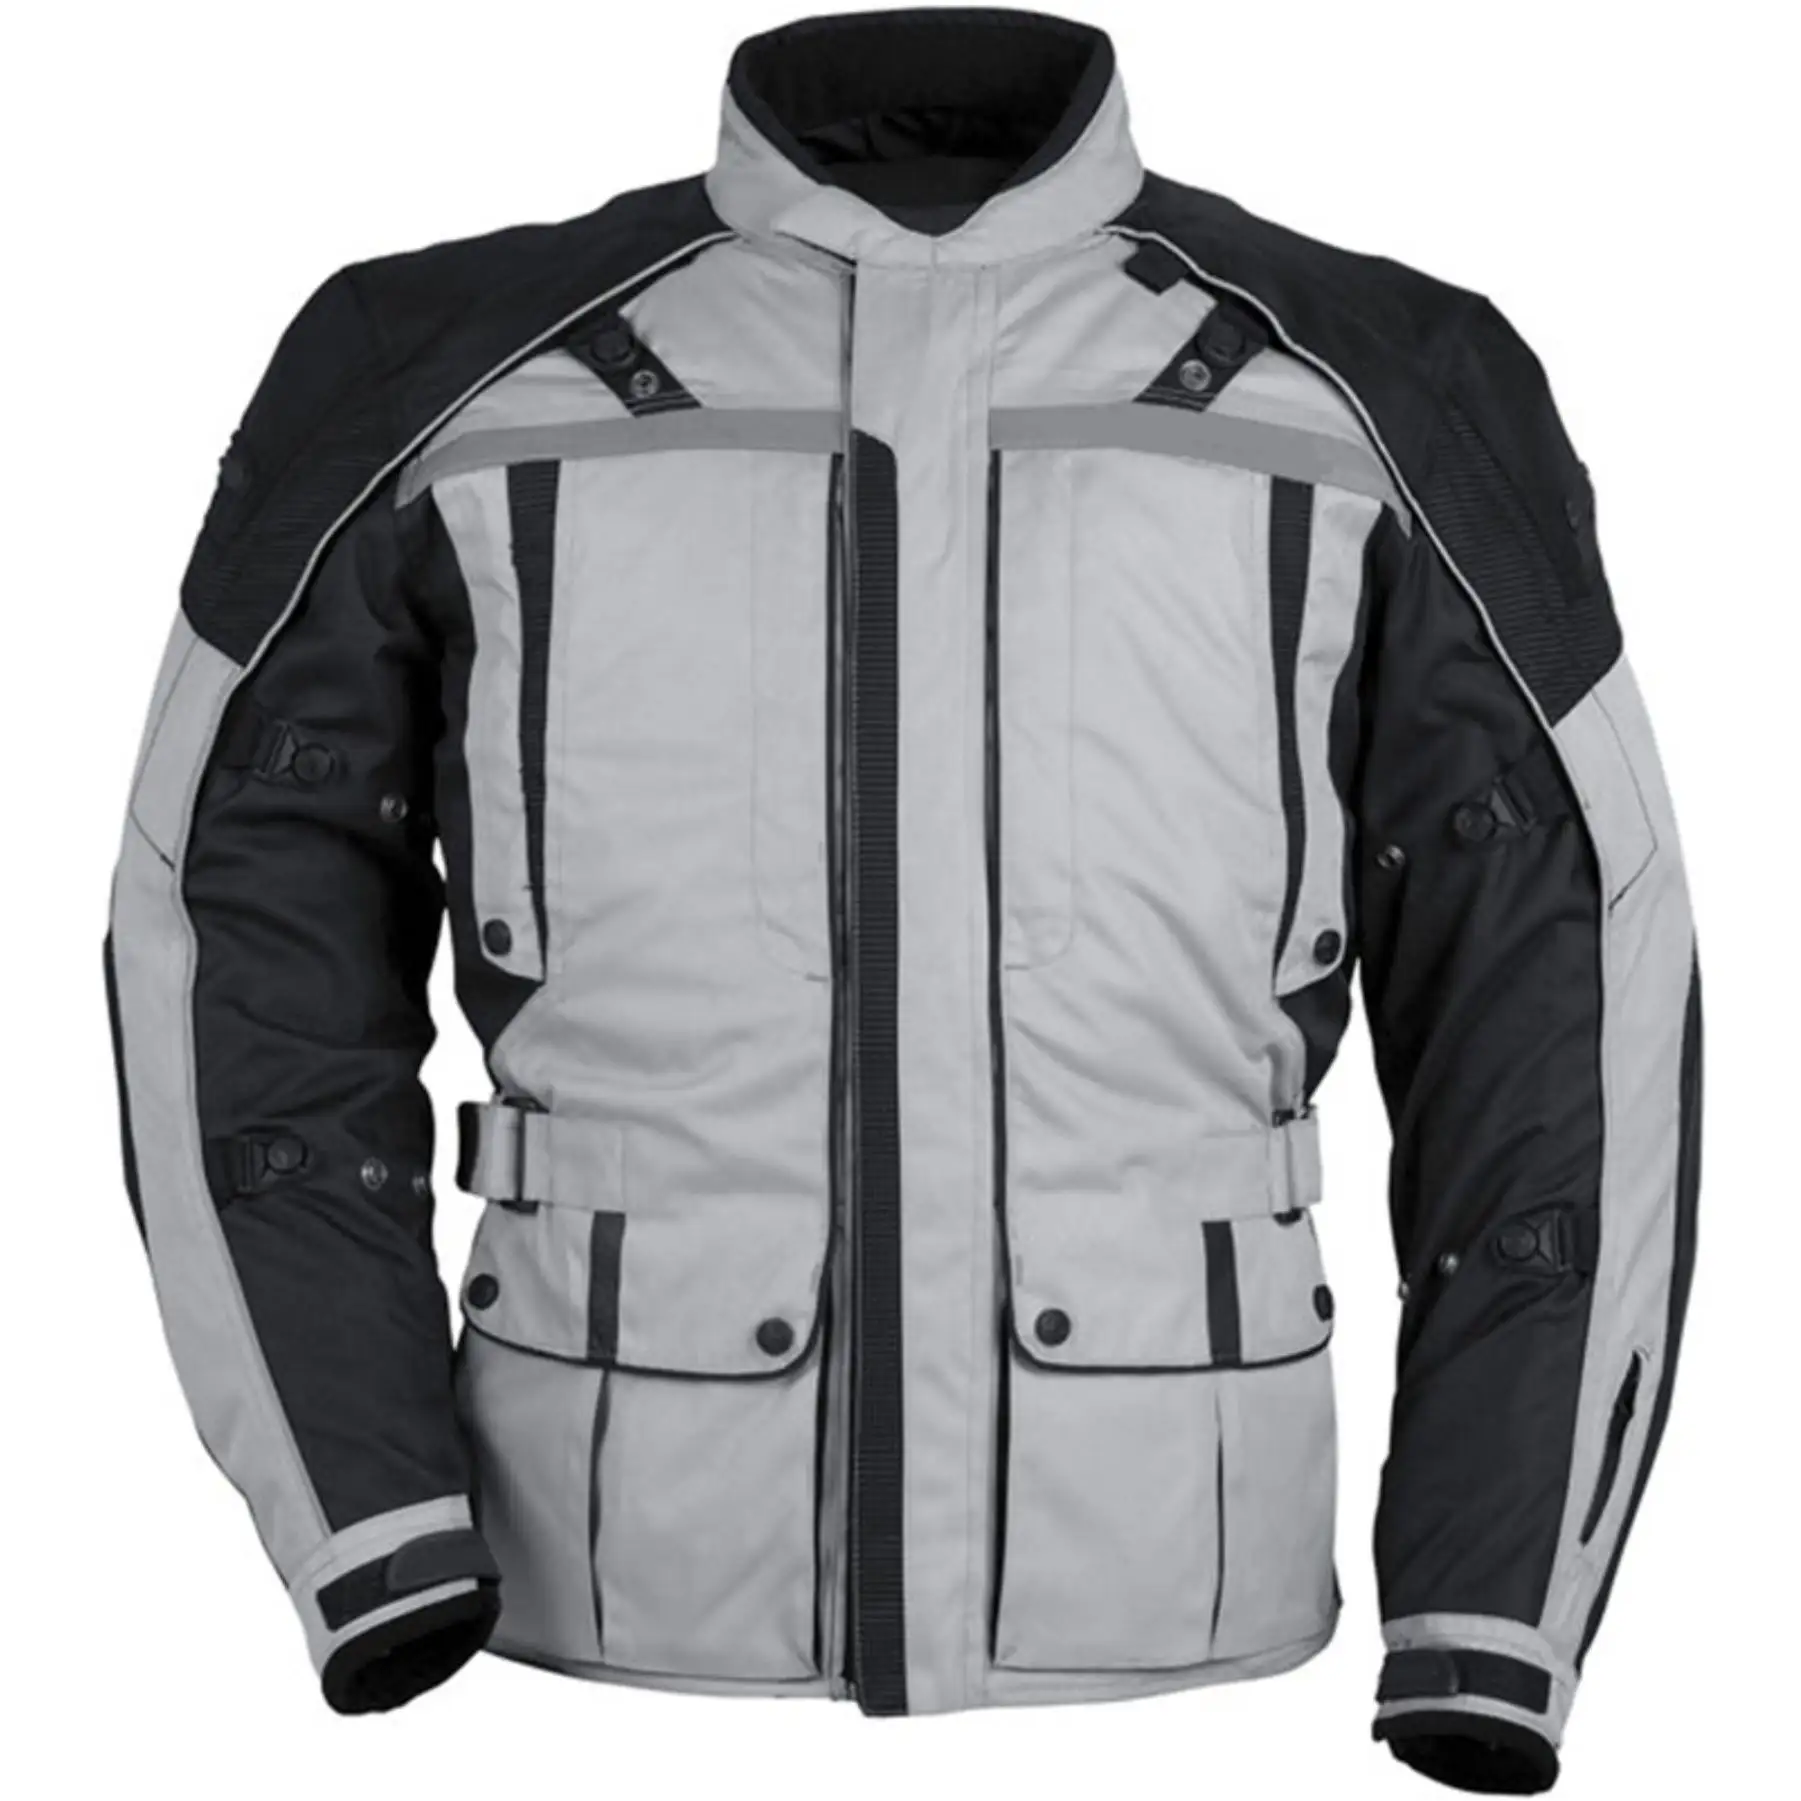 Motosiklet sıcak tekstil yarışı Cordura ceketler motosiklet ve oto yarış Cordura 600D özel takım adı özel istek baskı